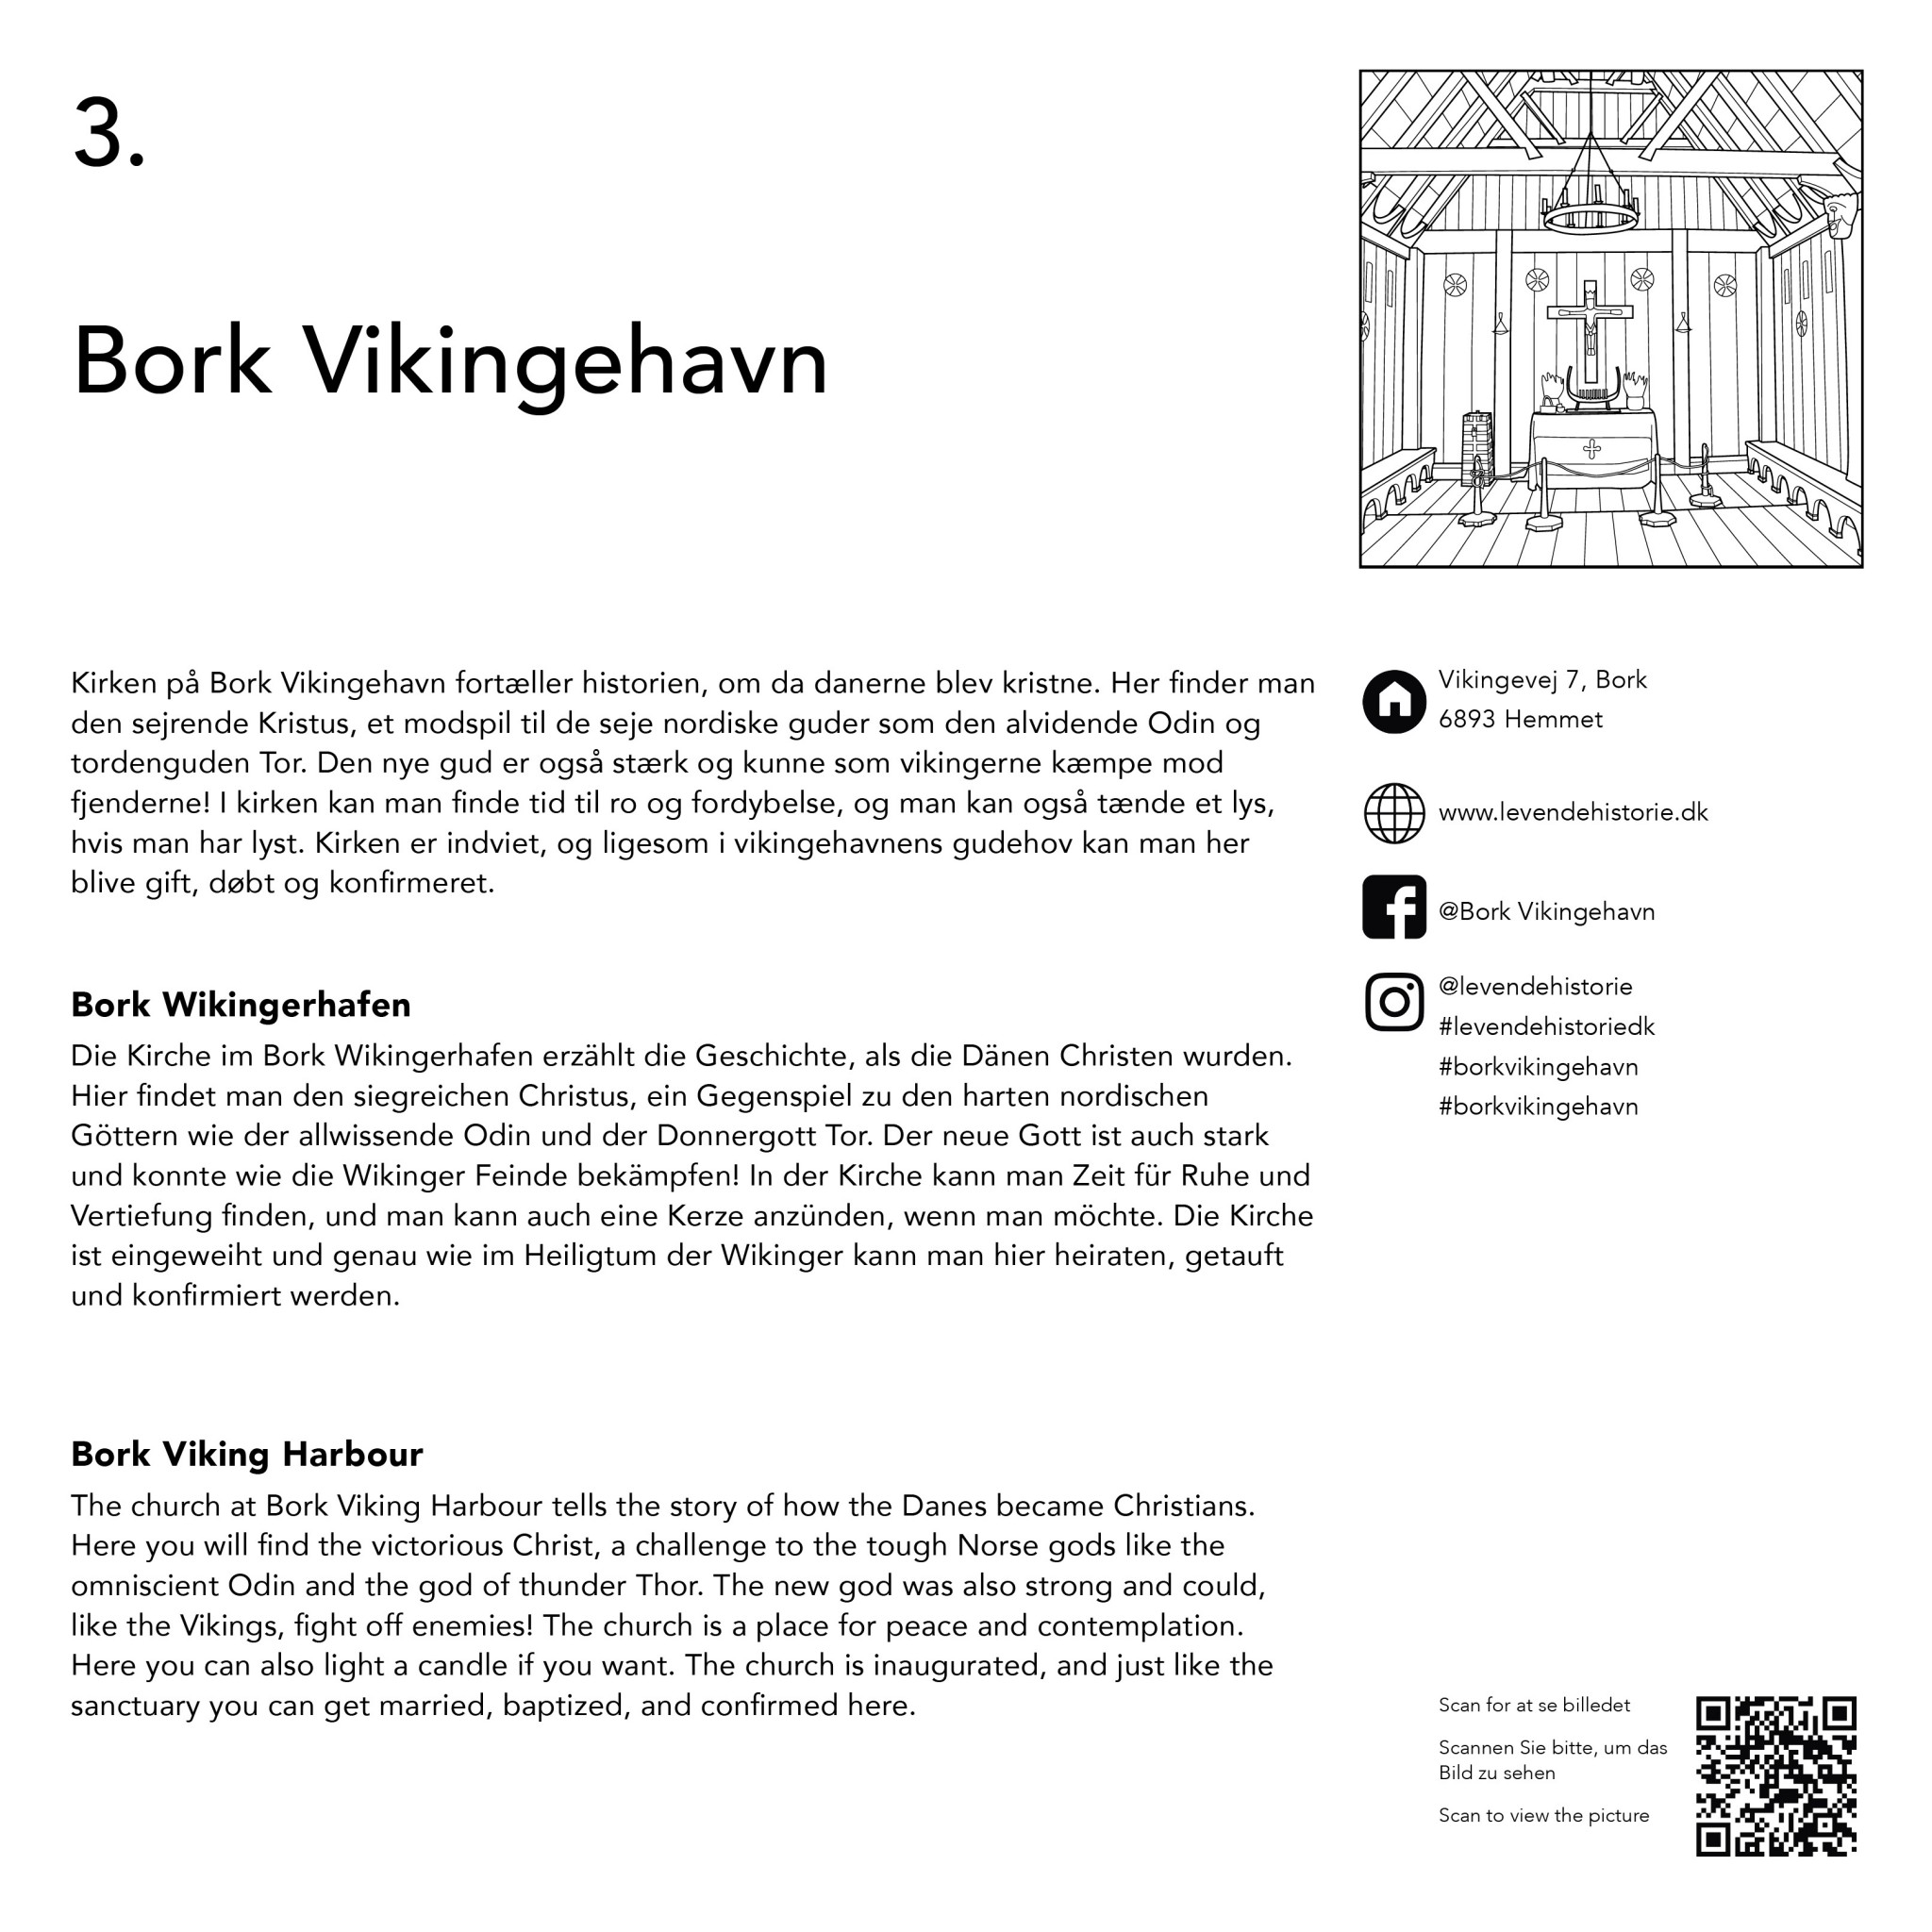 Colour Your Holiday - Sightseeing in Ringkøbing-Skjern -VB- Bork Vikingehavn historie